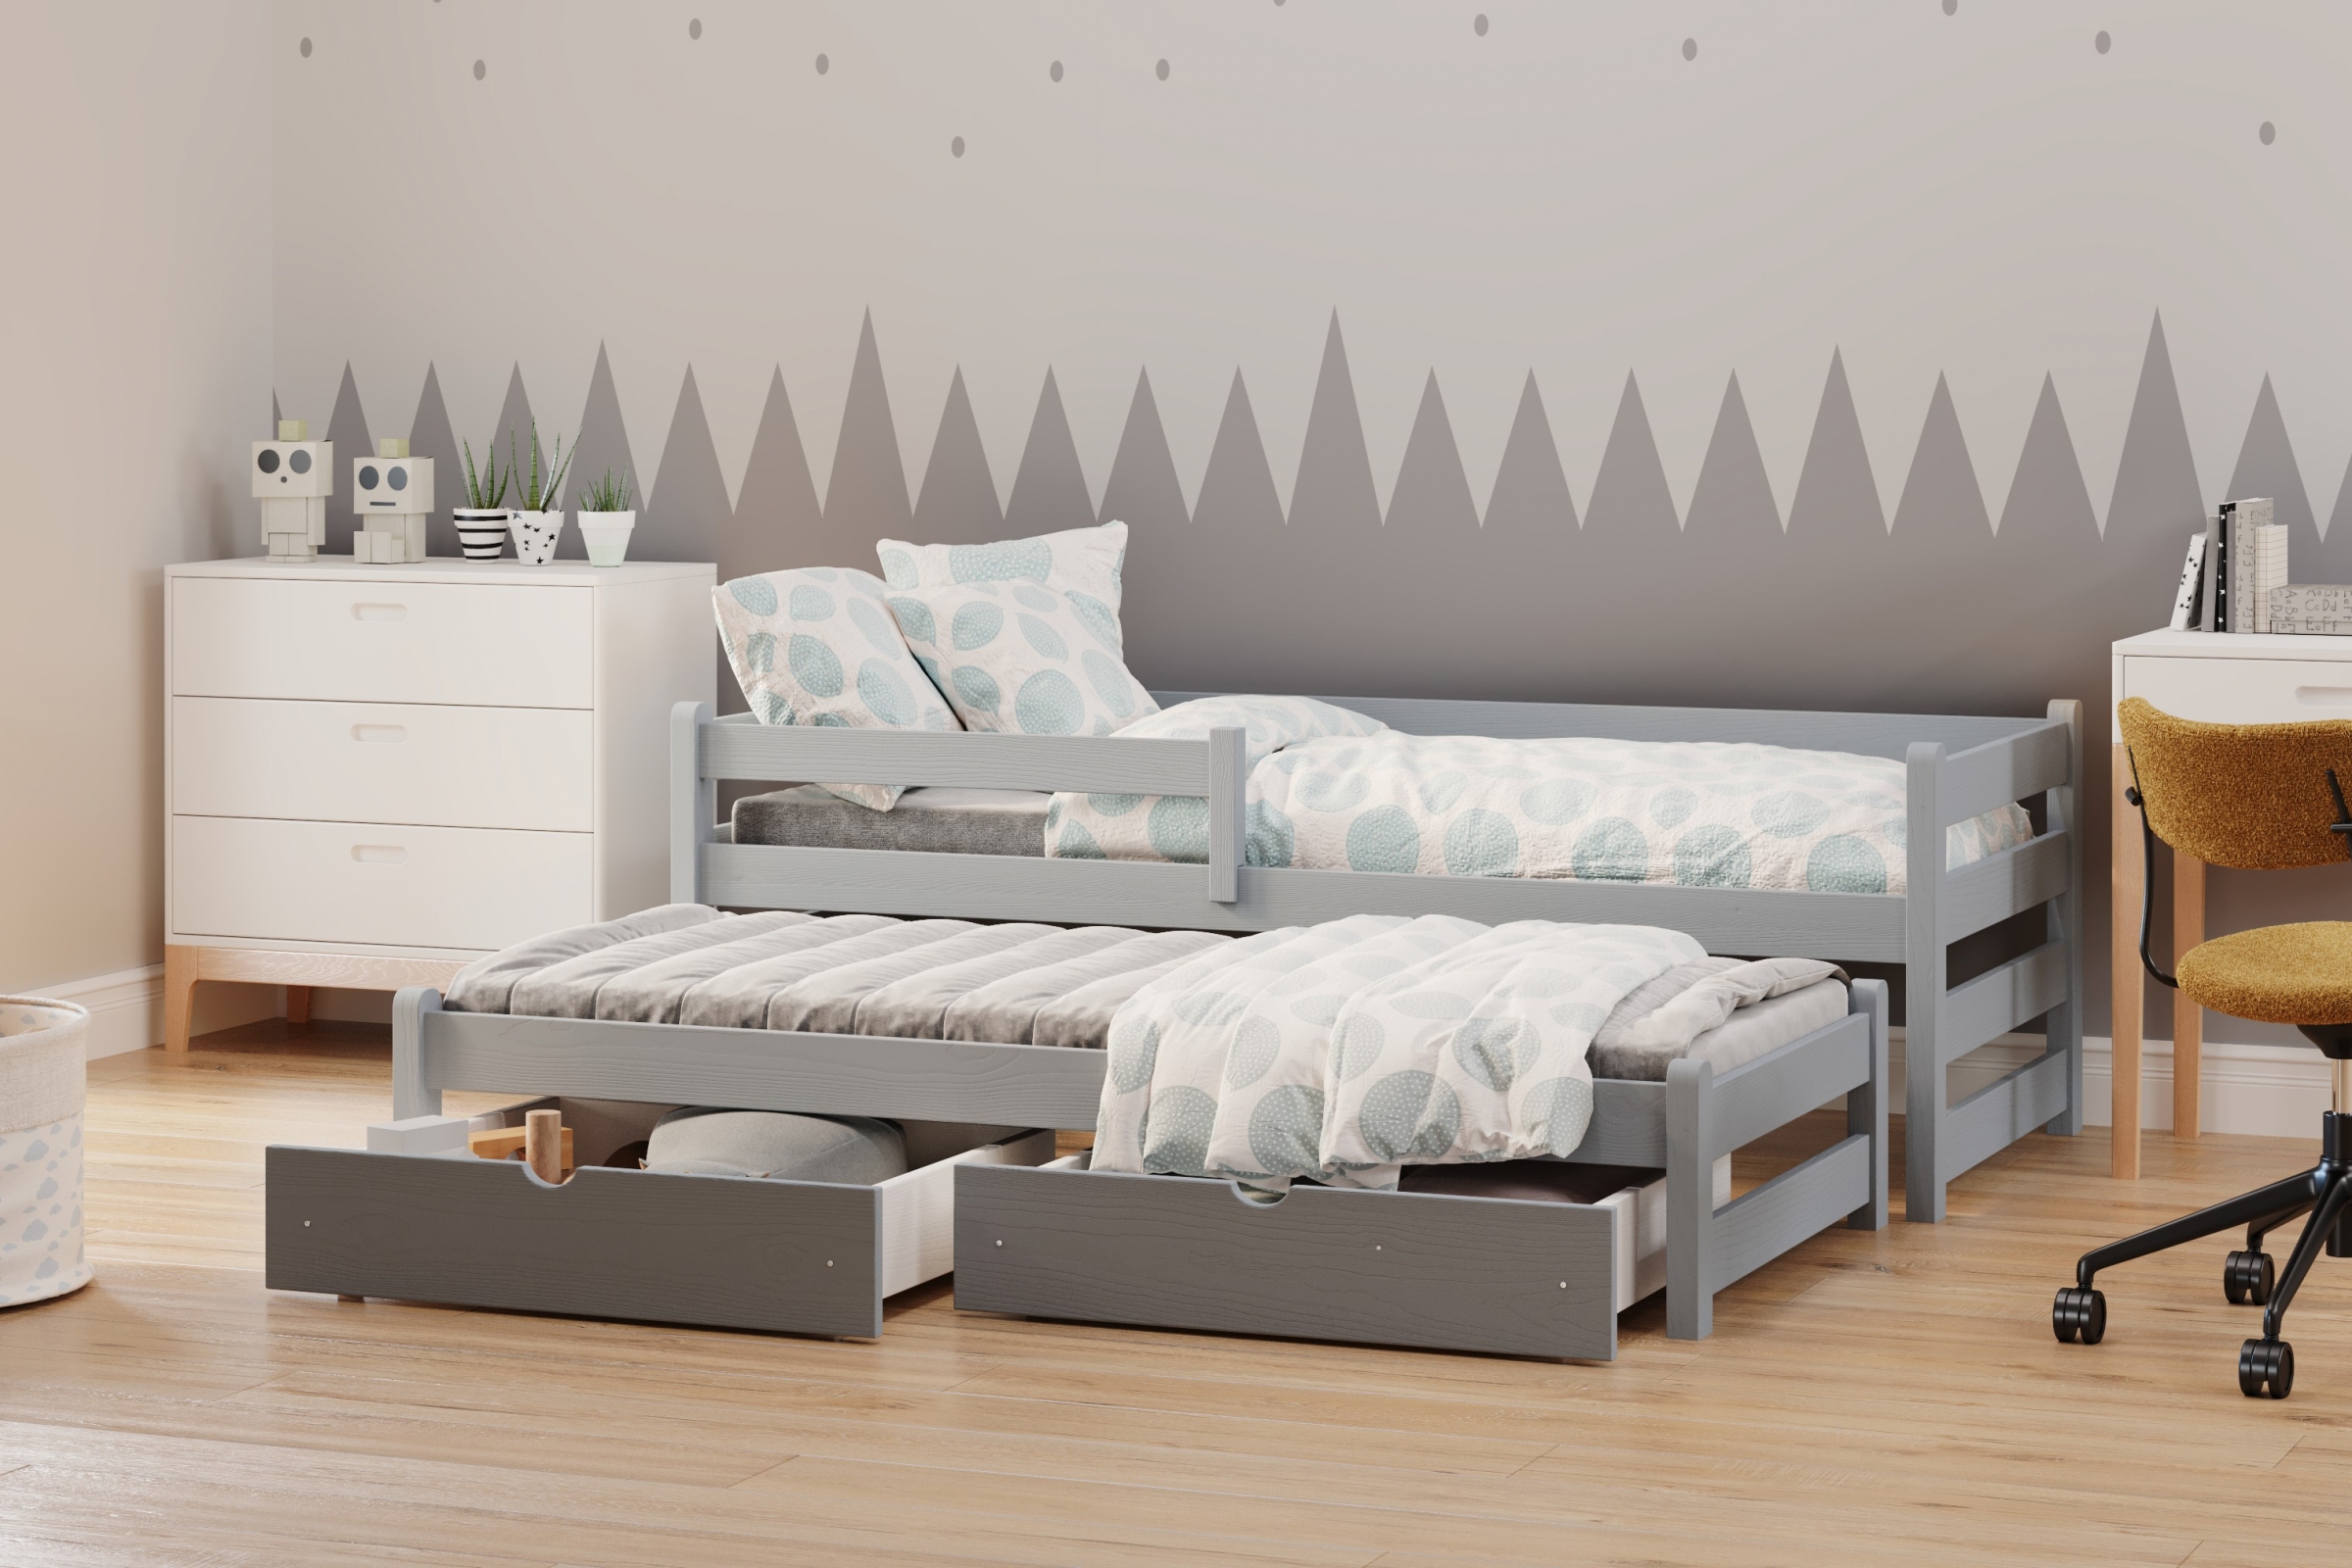 postel dětské přízemní výsuvná Alis DPV 001 - šedý, 90x190 postel přízemní výsuvná Alis - Barva šedý - aranzacja